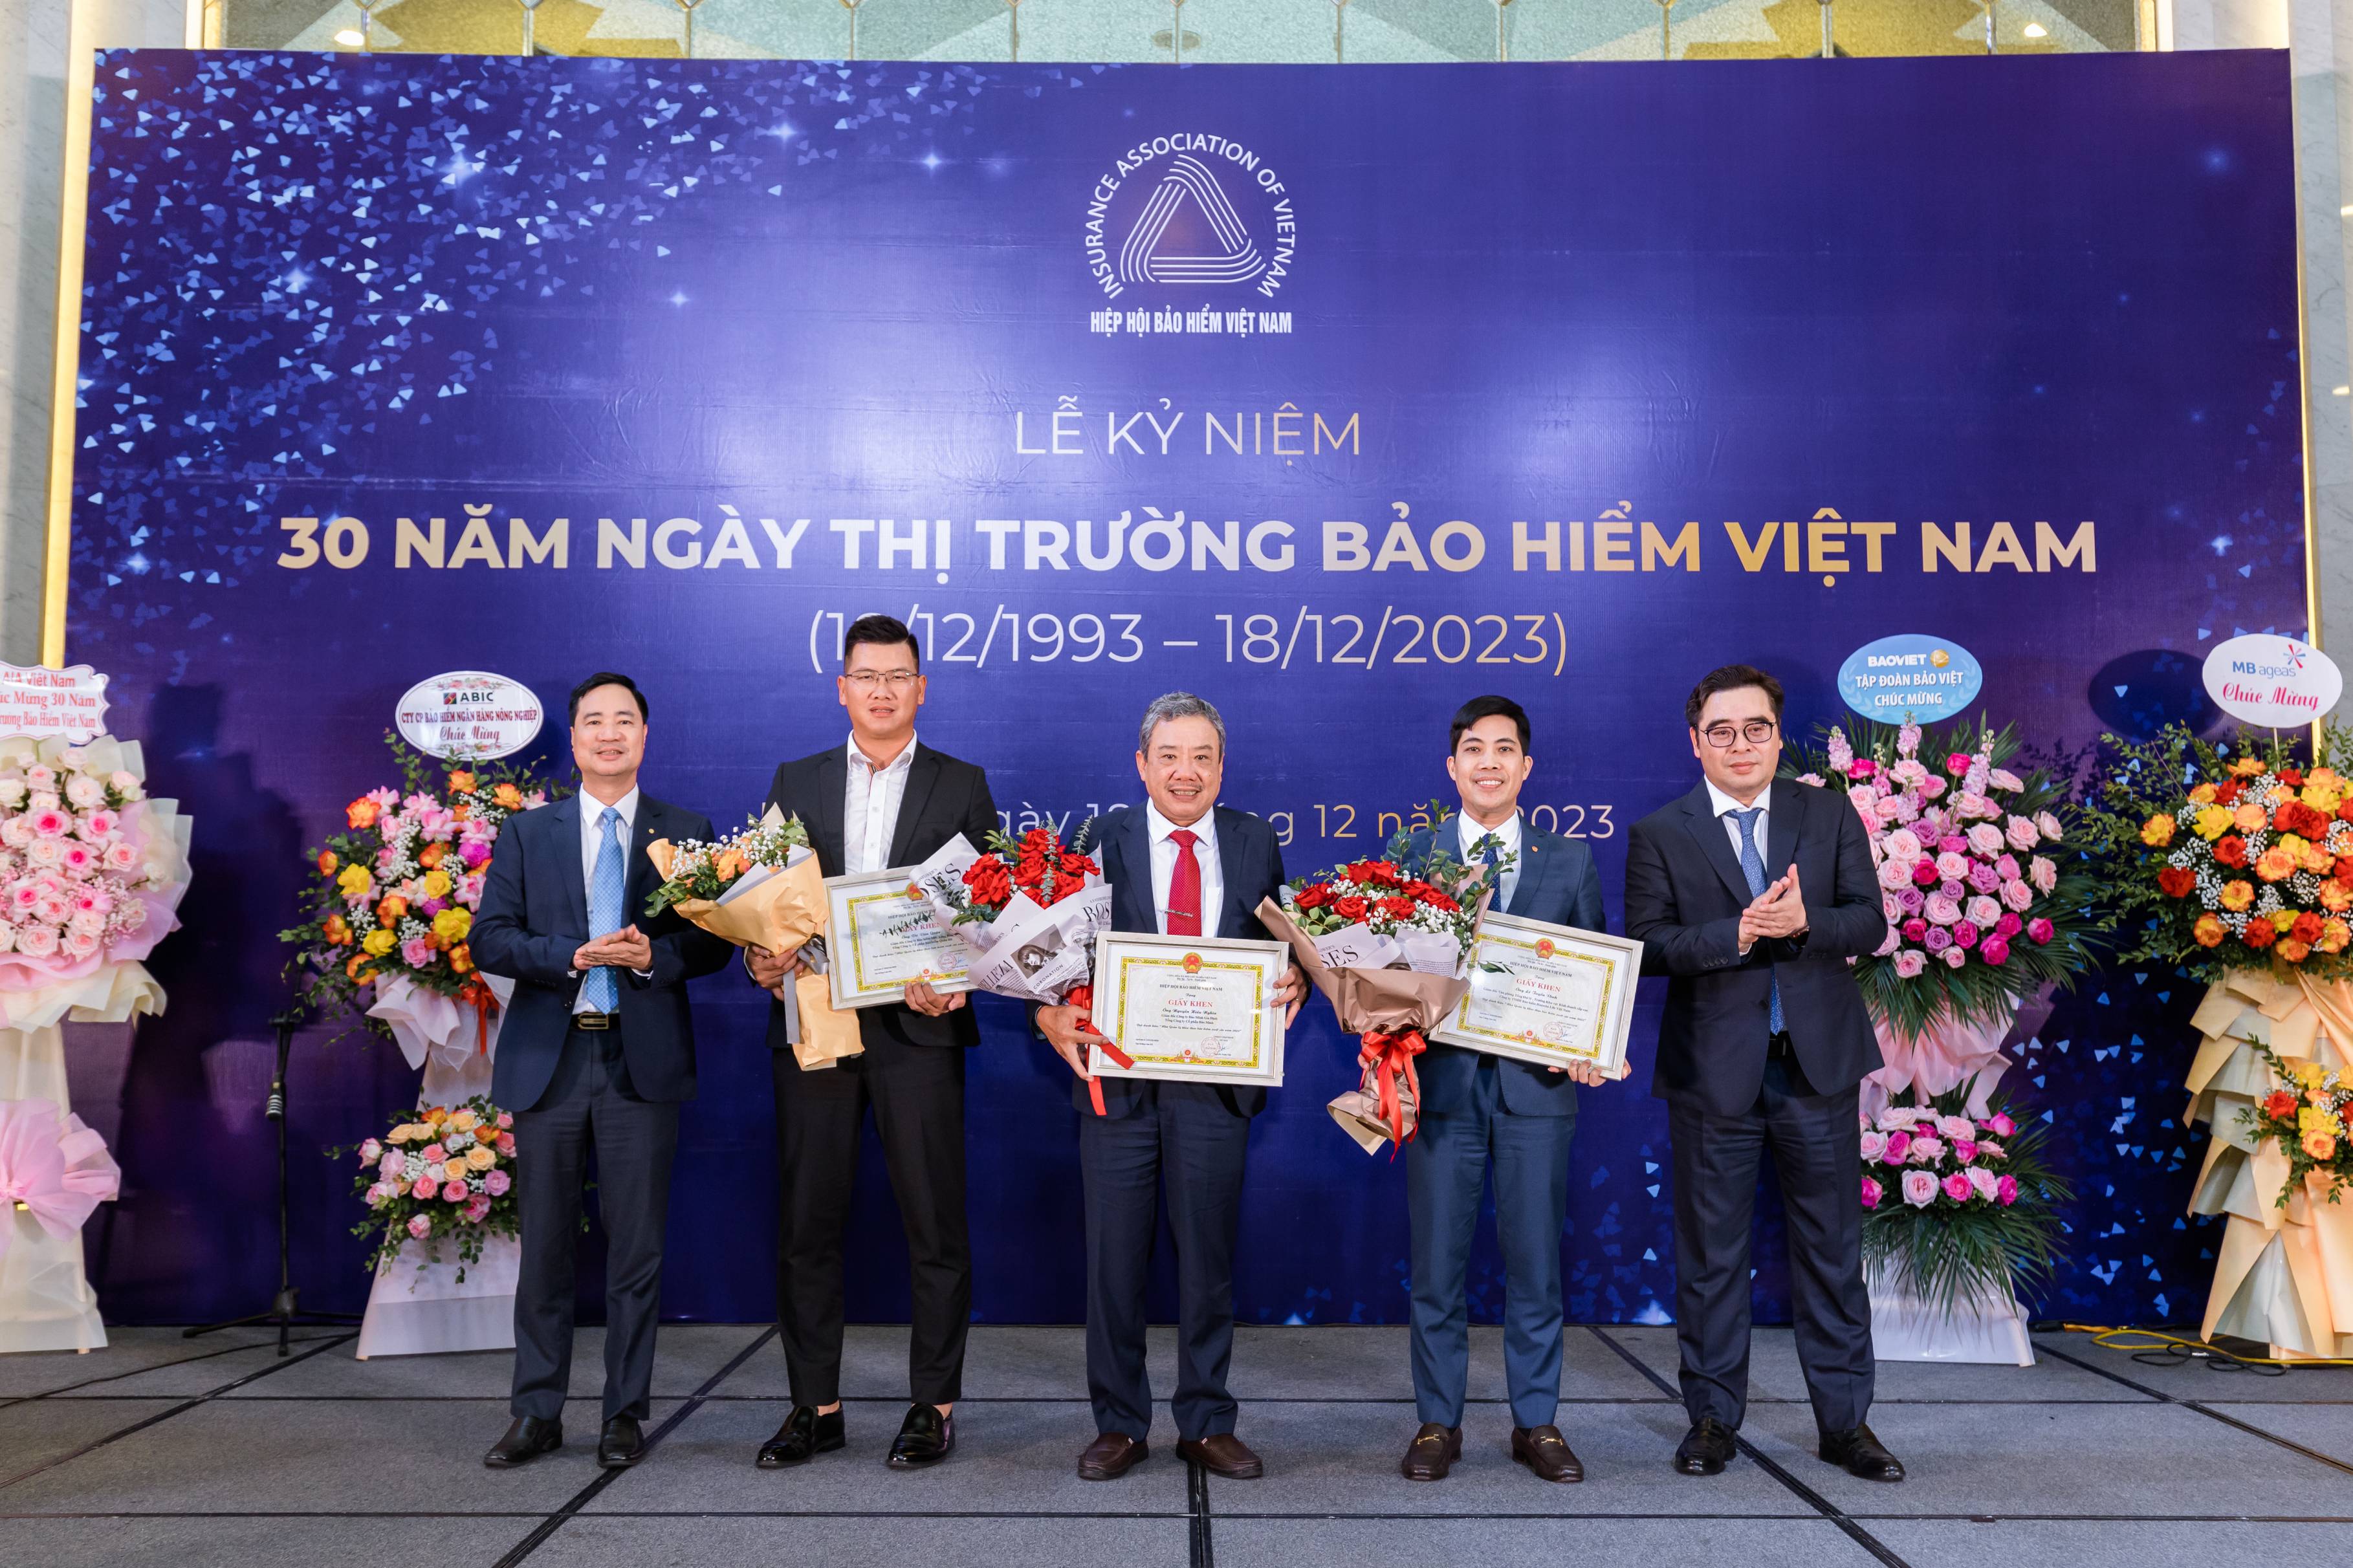 Ngày 18/12/2023, trong lễ kỷ niệm 30 năm ngày truyền thống thị trường bảo hiểm Việt Nam (1993-2023) do Hiệp hội Bảo hiểm Việt Nam tổ chức tại Hà Nội, Hanwha Life tự hào khi được vinh danh tại 3 hạng mục giải thưởng vì những cống hiến hiệu quả và tích cực vào sự phát triển của ngành bảo hiểm Việt Nam. 